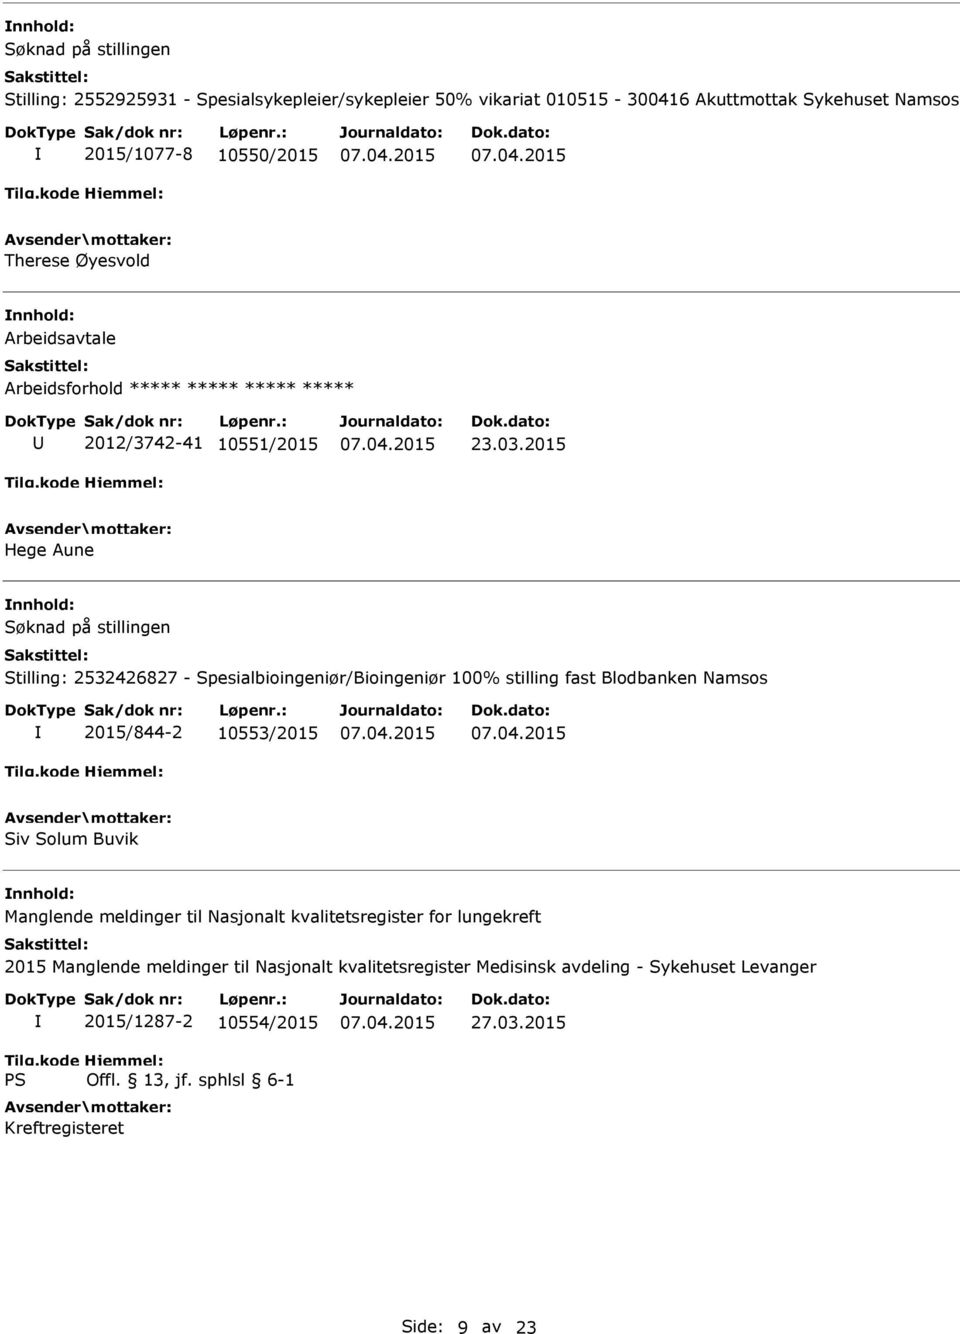 2015 Hege Aune nnhold: Stilling: 2532426827 - Spesialbioingeniør/Bioingeniør 100% stilling fast Blodbanken Namsos 2015/844-2 10553/2015 Siv Solum Buvik